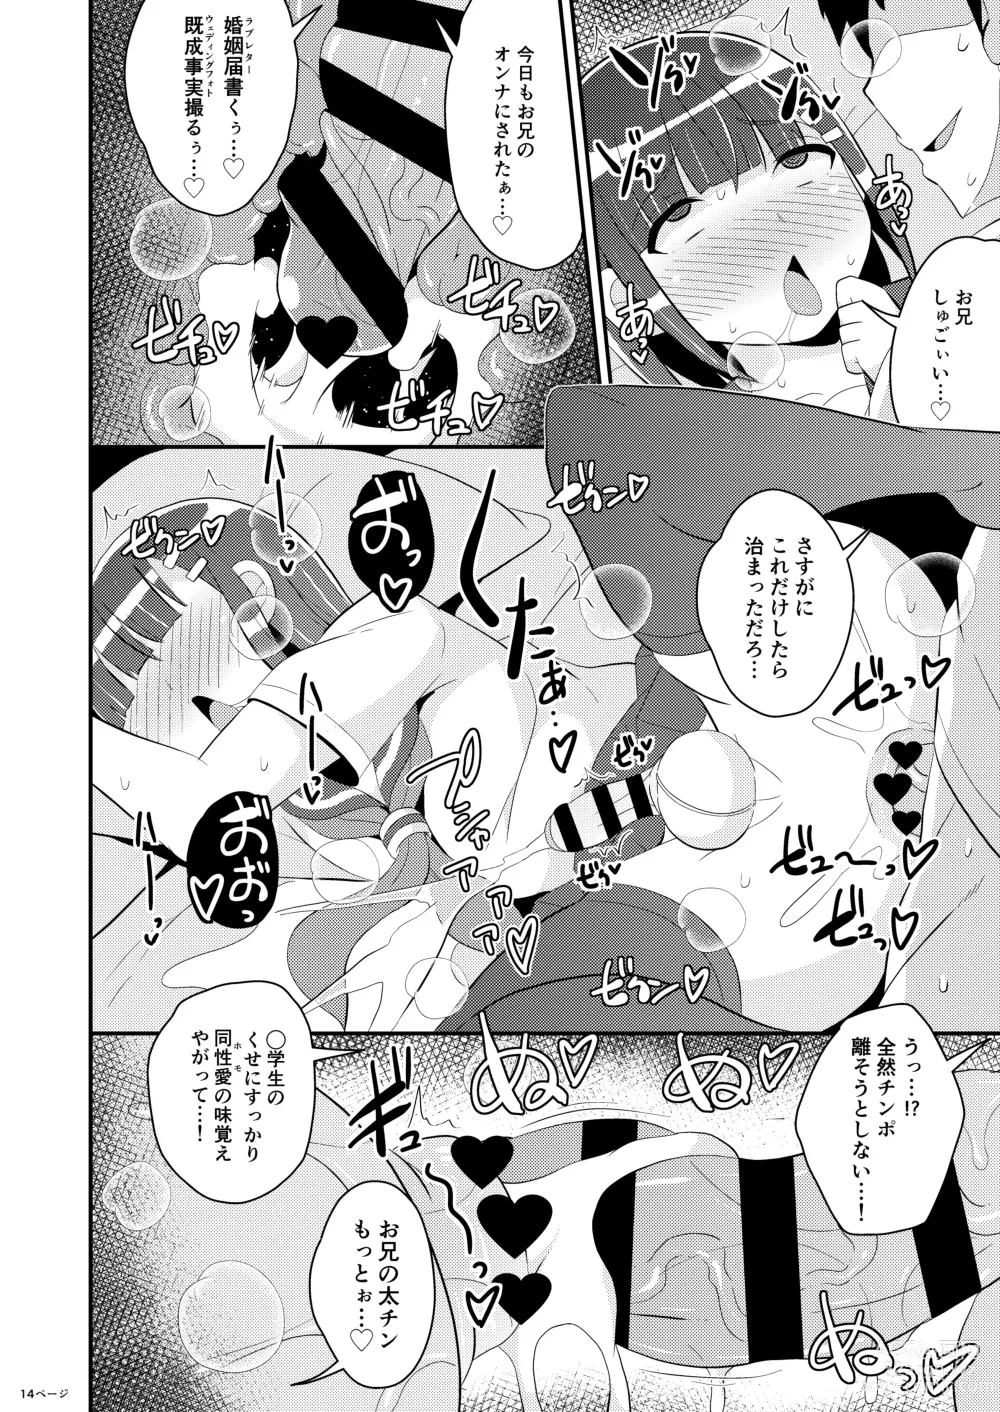 Page 14 of doujinshi Hatsujou Okama no Seishori Gakari